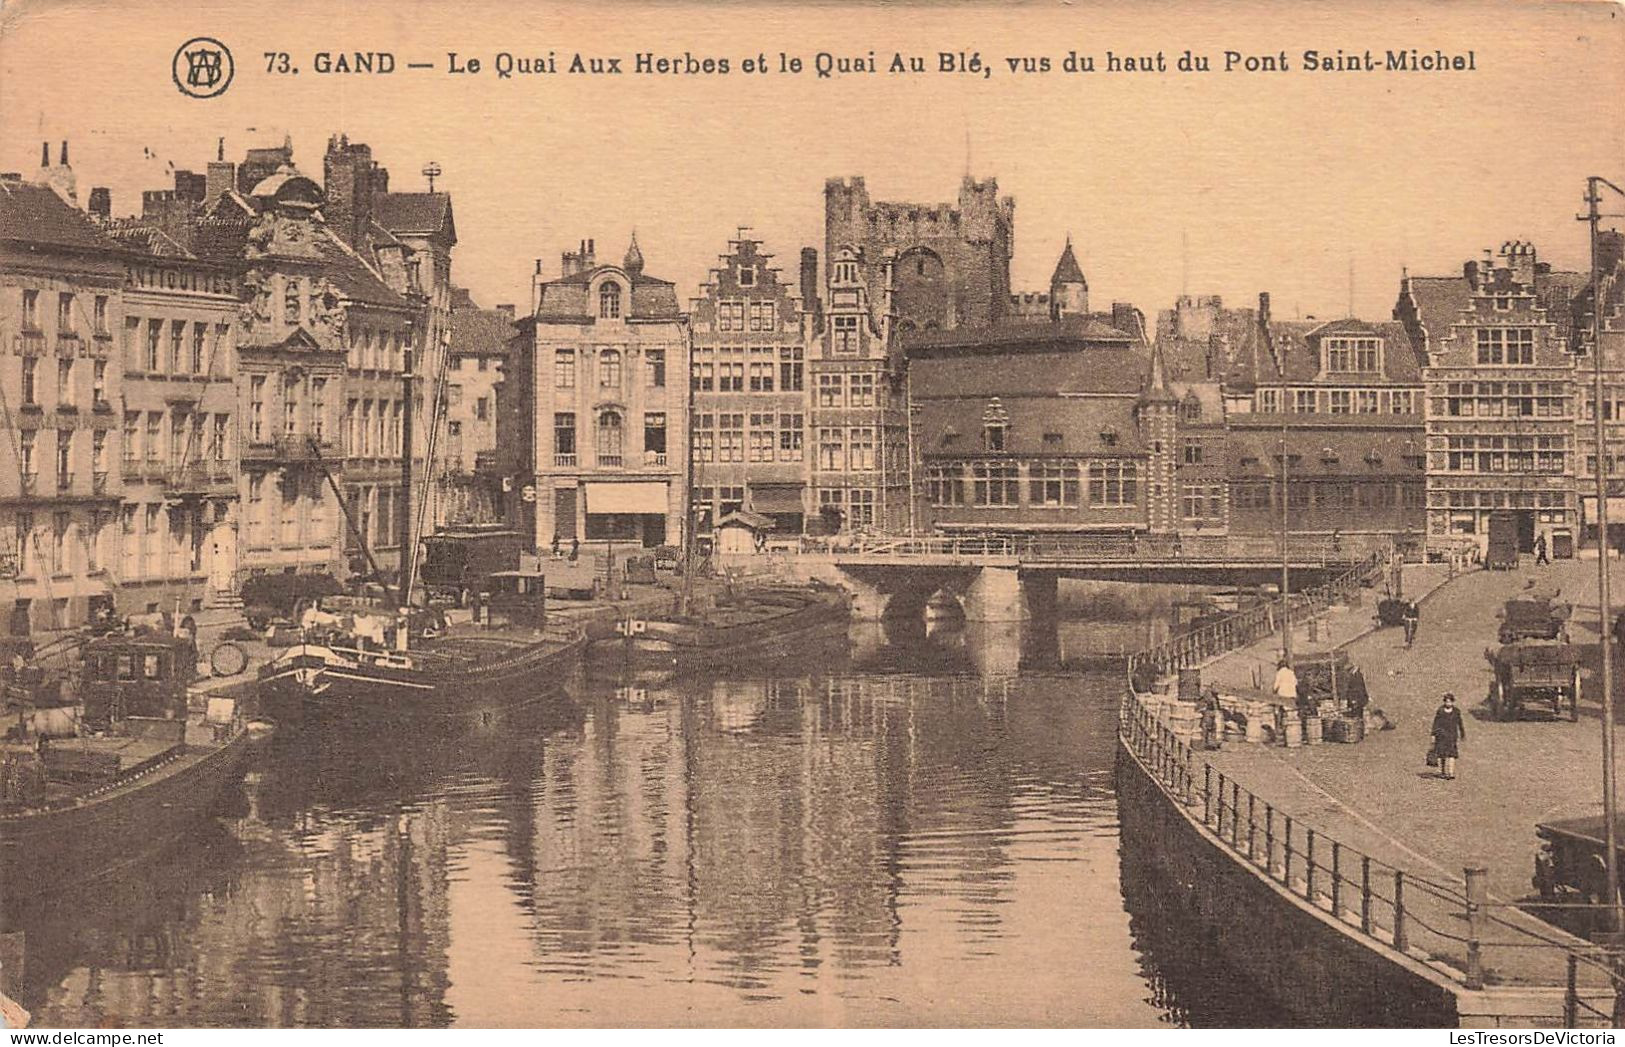 BELGIQUE - Gand - Le Quai Aux Herbes T La Quai Au Blé - Vus Du Haut Du Pont Saint Michel - Carte Postale Ancienne - Gent